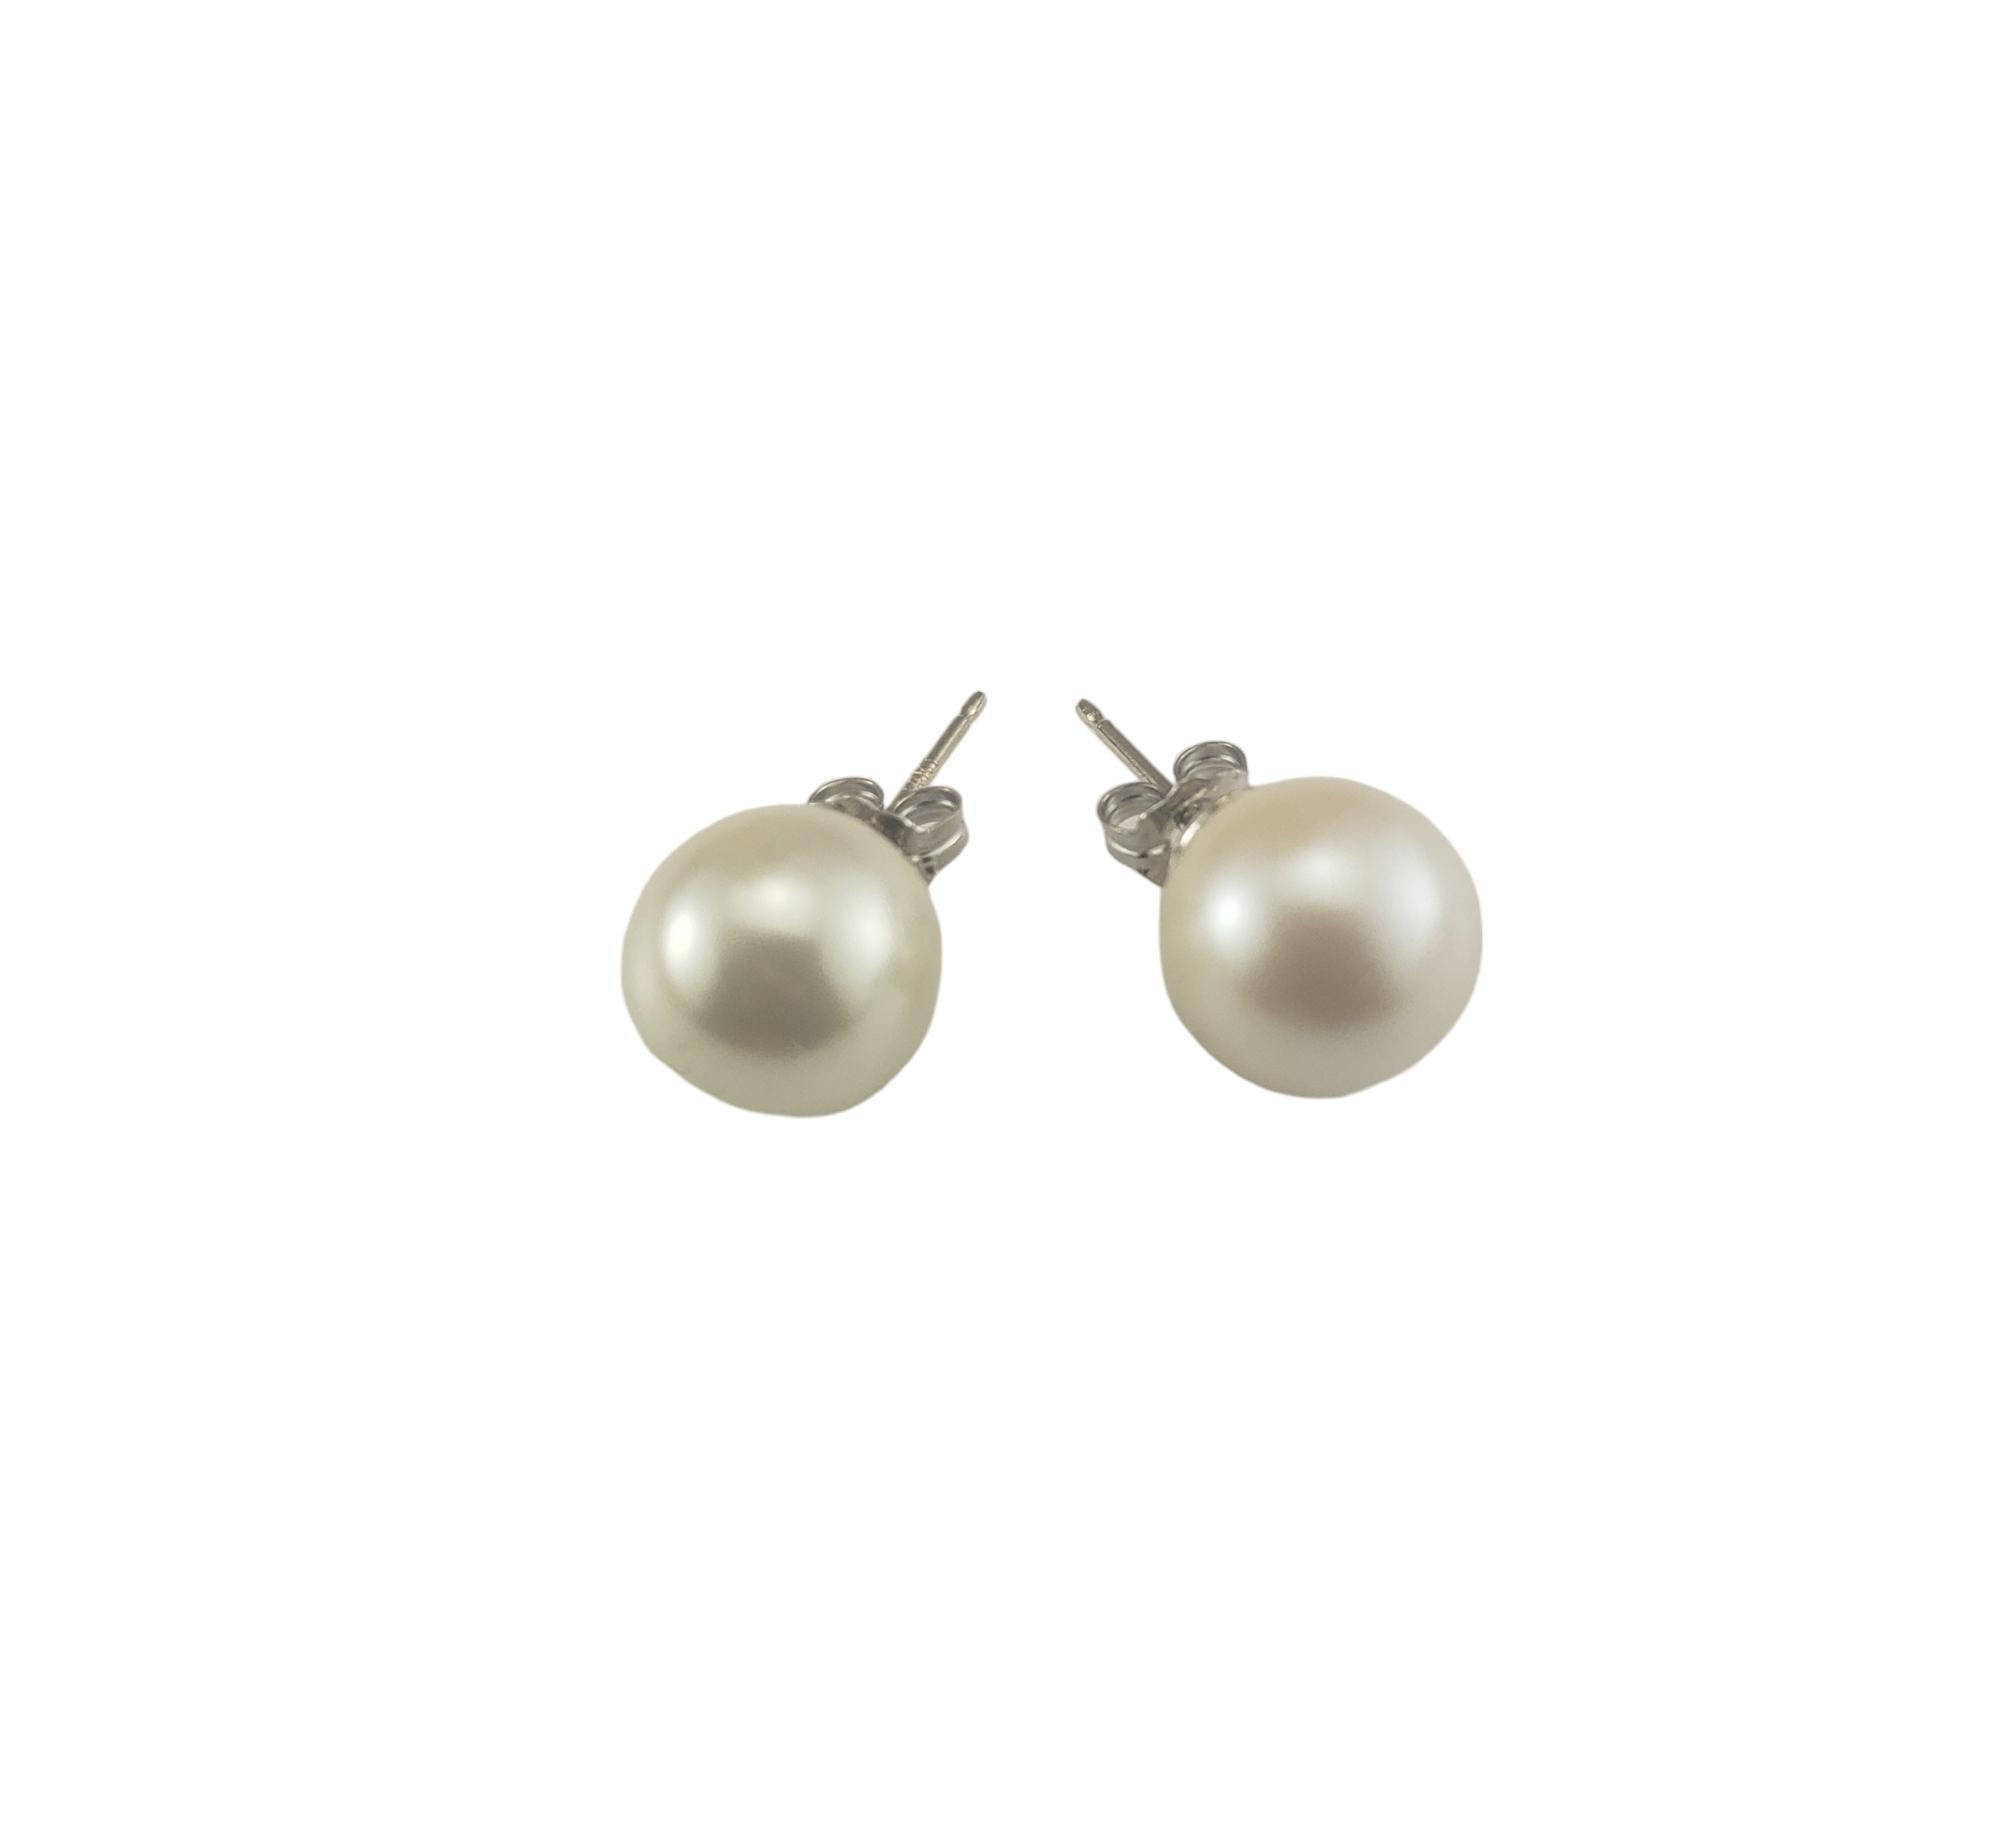 14 Karat Weißgold Perlen-Ohrstecker-

Diese eleganten Ohrringe sind mit je einer weißen Perle (10 mm) in klassischem 14-karätigem Weißgold gefasst.  Push-Back-Verschlüsse.

Größe: 10 mm

Gestempelt: 14KT

Gewicht: 1,5 dwt./ 2,4 gr.

Sehr guter